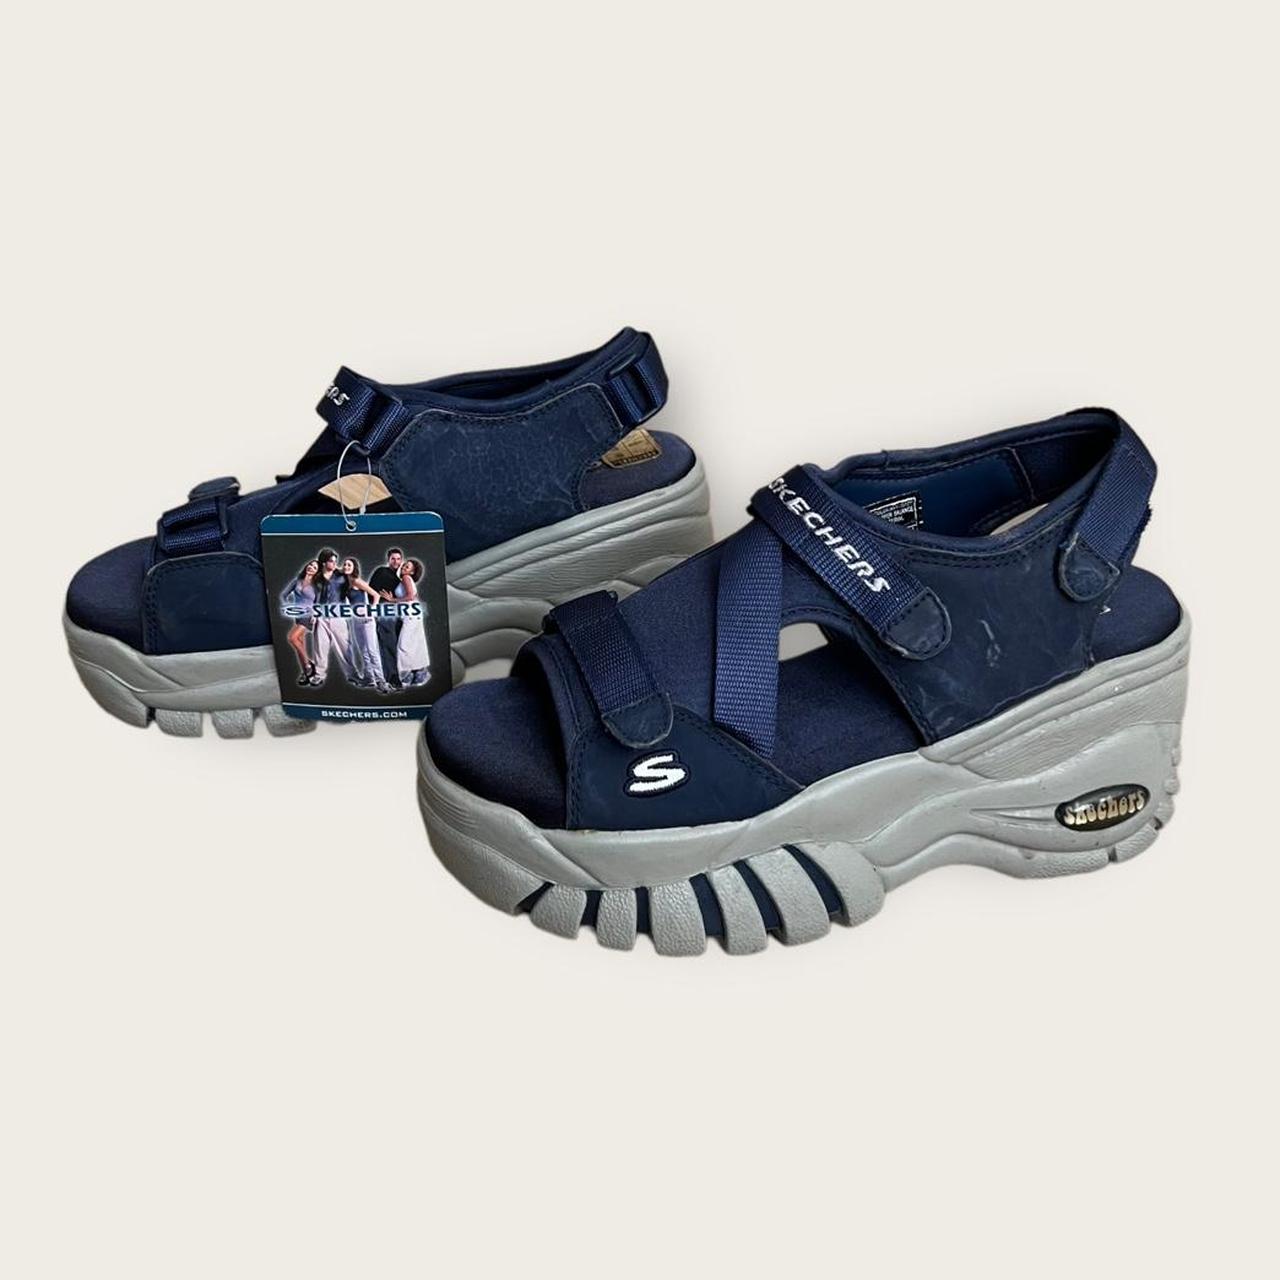 Skechers Women's Navy and Grey Sandals | Depop